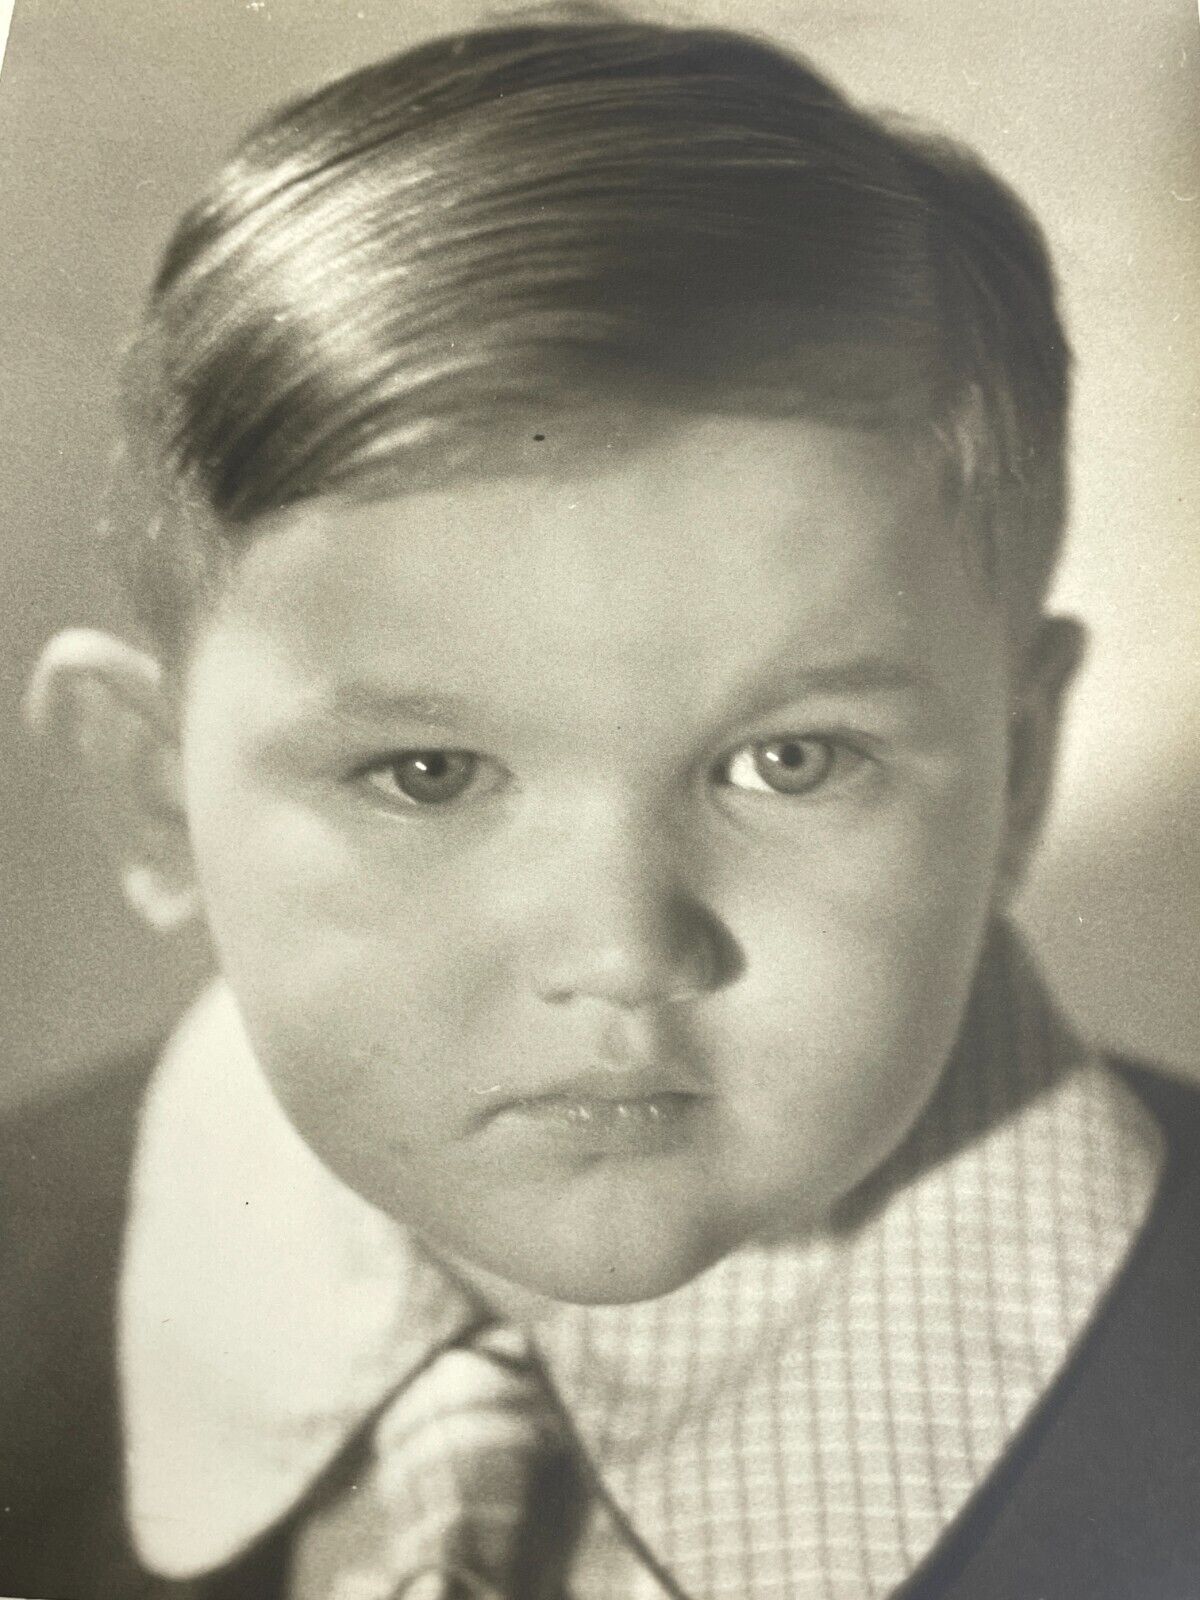 BV Photograph 8x10 1930's Boy Portrait